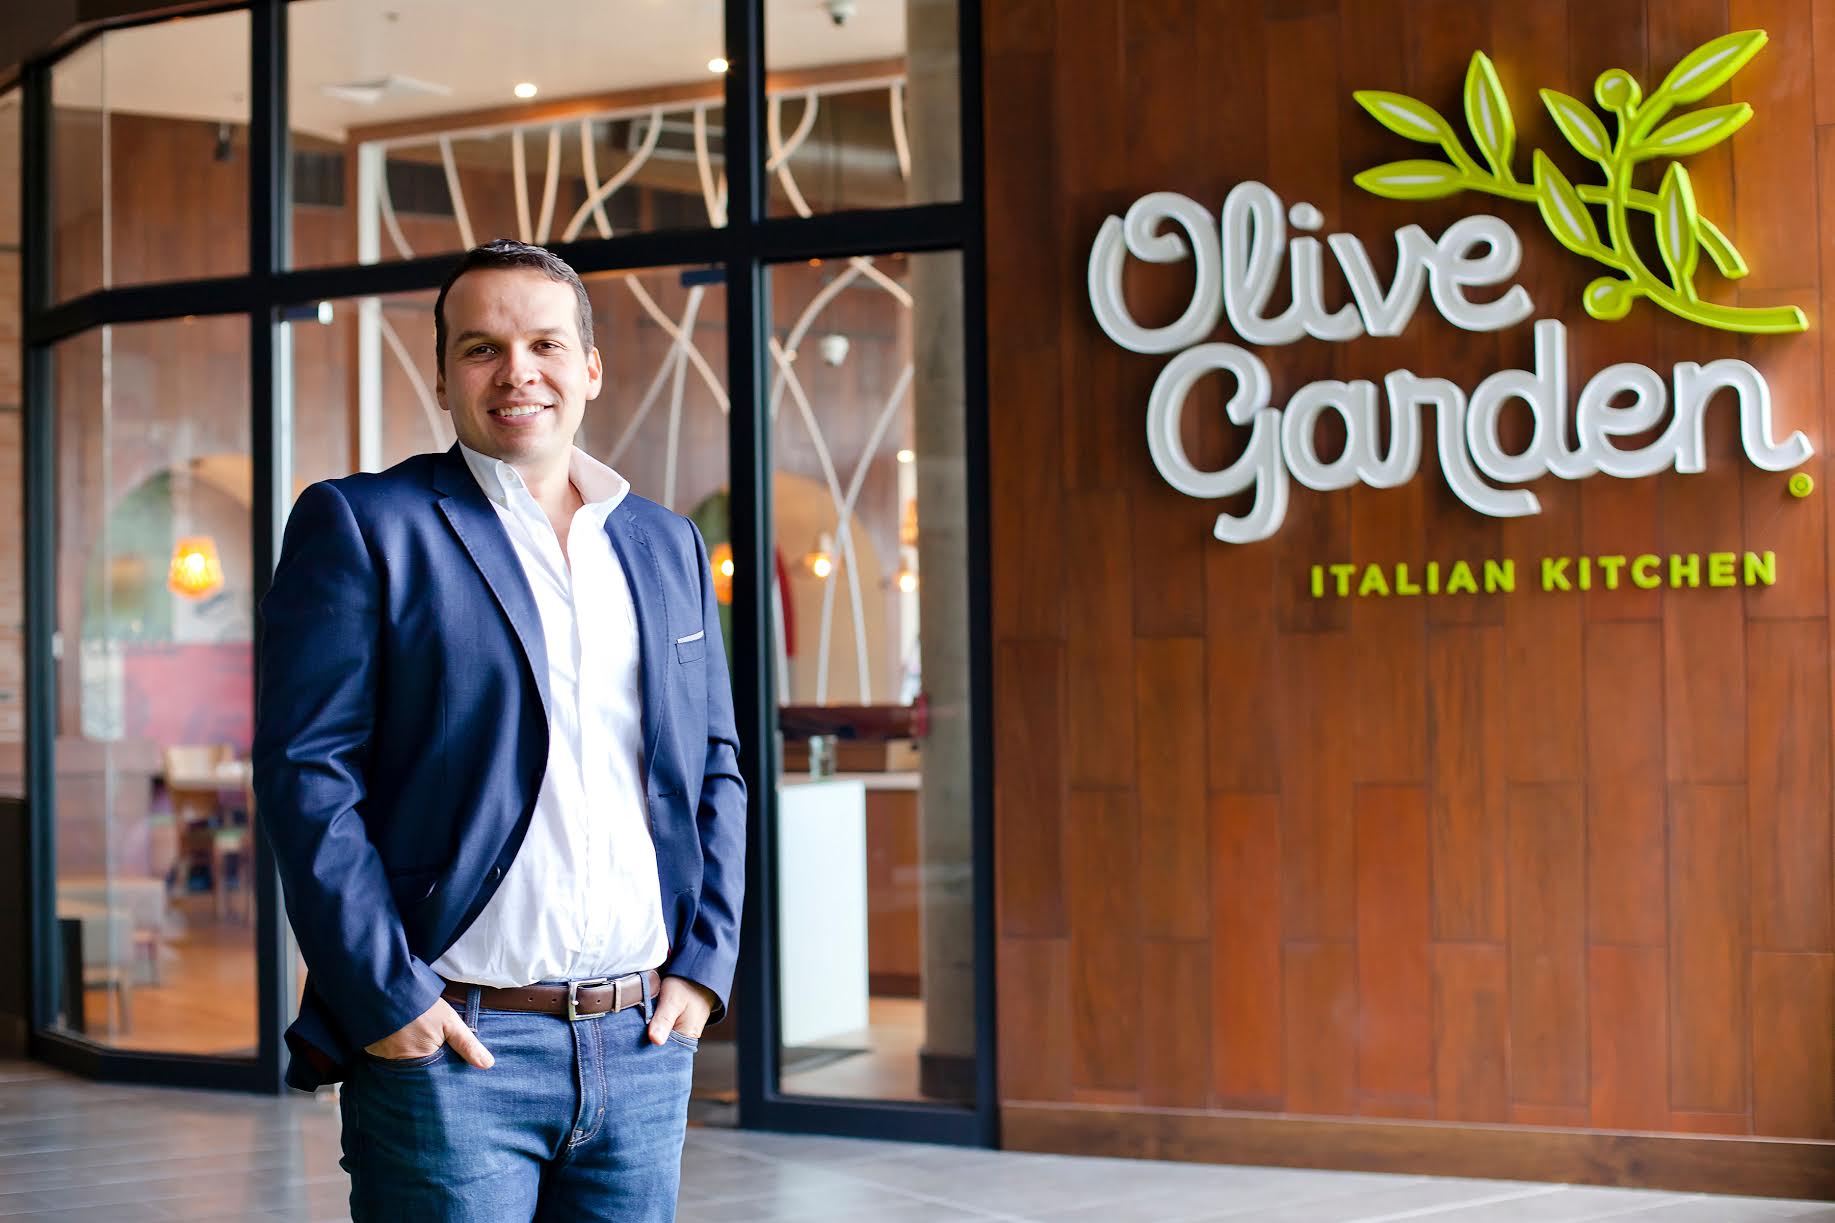 Restaurante Italiano Olive Garden Abre Sus Puertas En Costa Rica Revista Summa